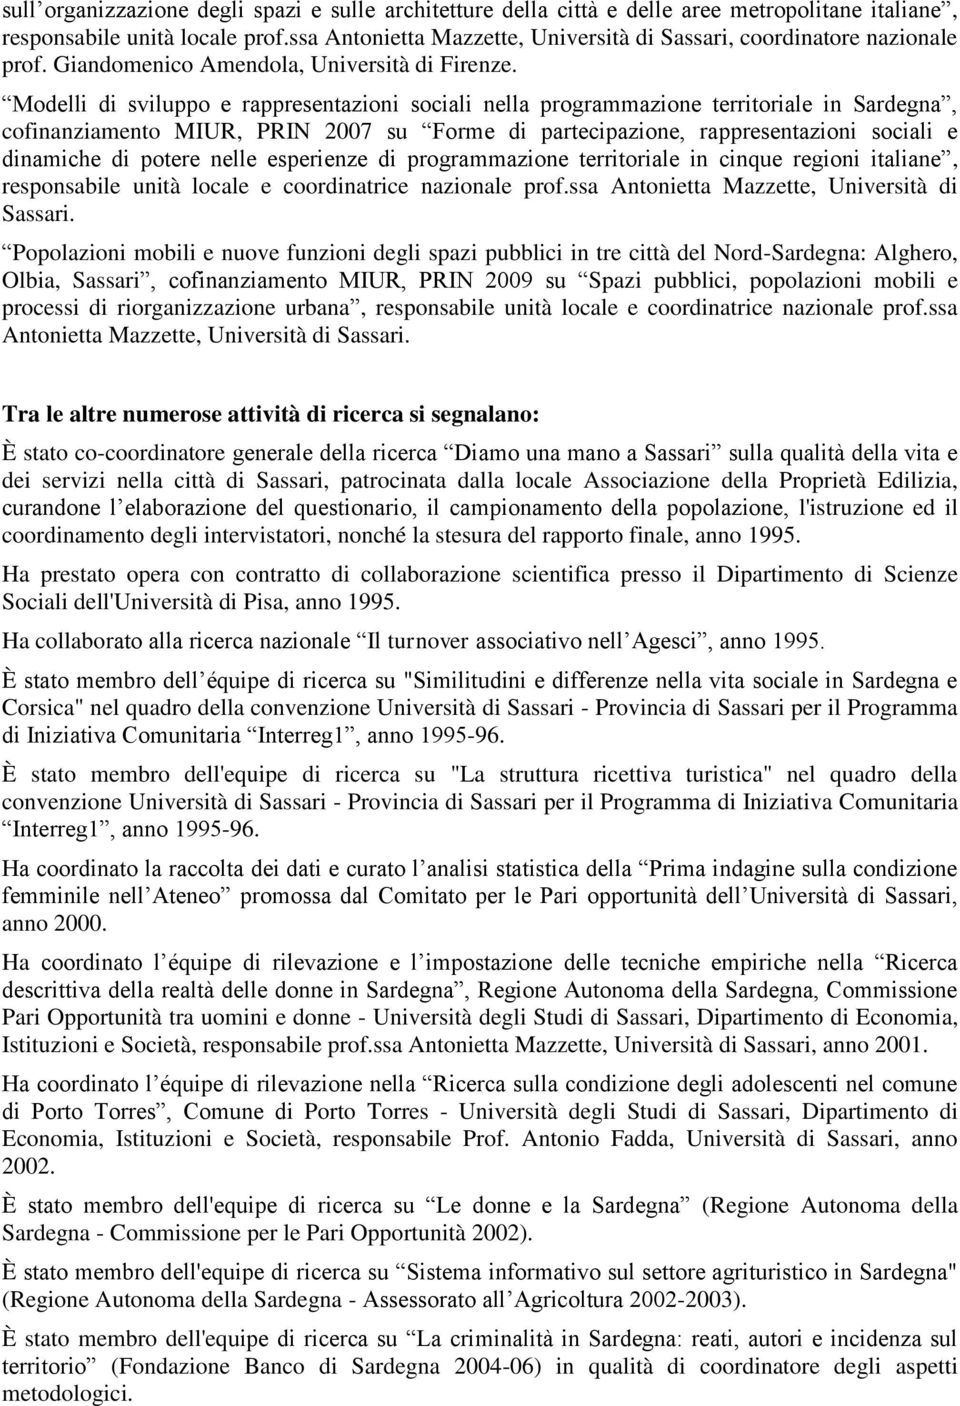 Modelli di sviluppo e rappresentazioni sociali nella programmazione territoriale in Sardegna, cofinanziamento MIUR, PRIN 2007 su Forme di partecipazione, rappresentazioni sociali e dinamiche di